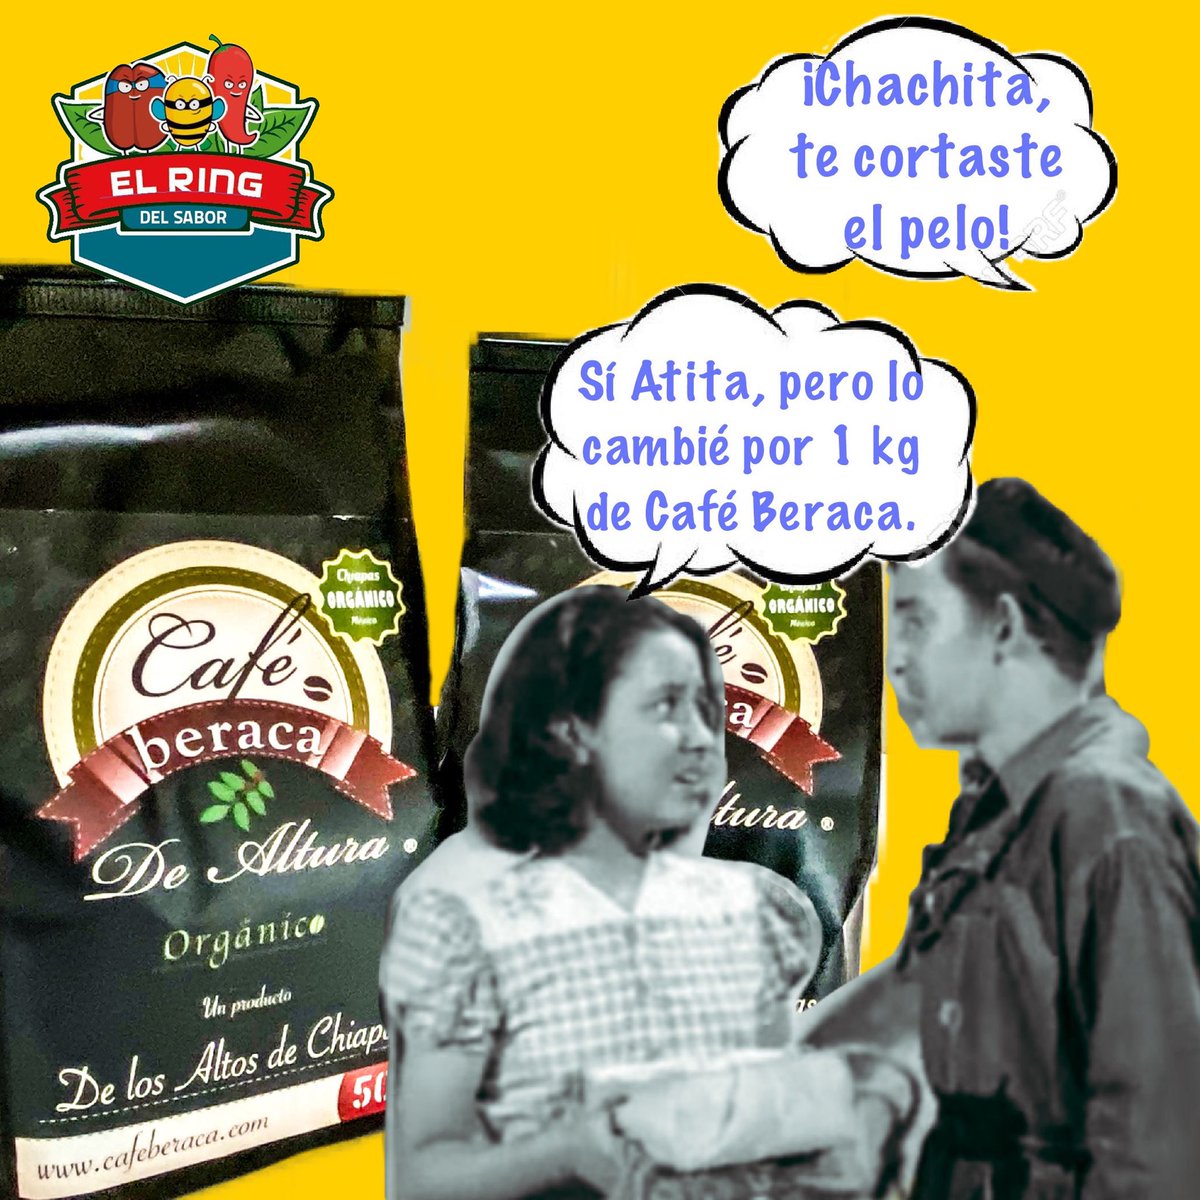 #caféberaca #coffeelover #cafedechiapas #cafecito #cafecitotime 
#consumelocal #comerciojusto #comerciolocal #hechoenmexico #lohechoenmexicoestabienhecho #consumelocalmx #mejorenbici #bicientregas #ciudaddemexico #cdmx #elringdelsabor